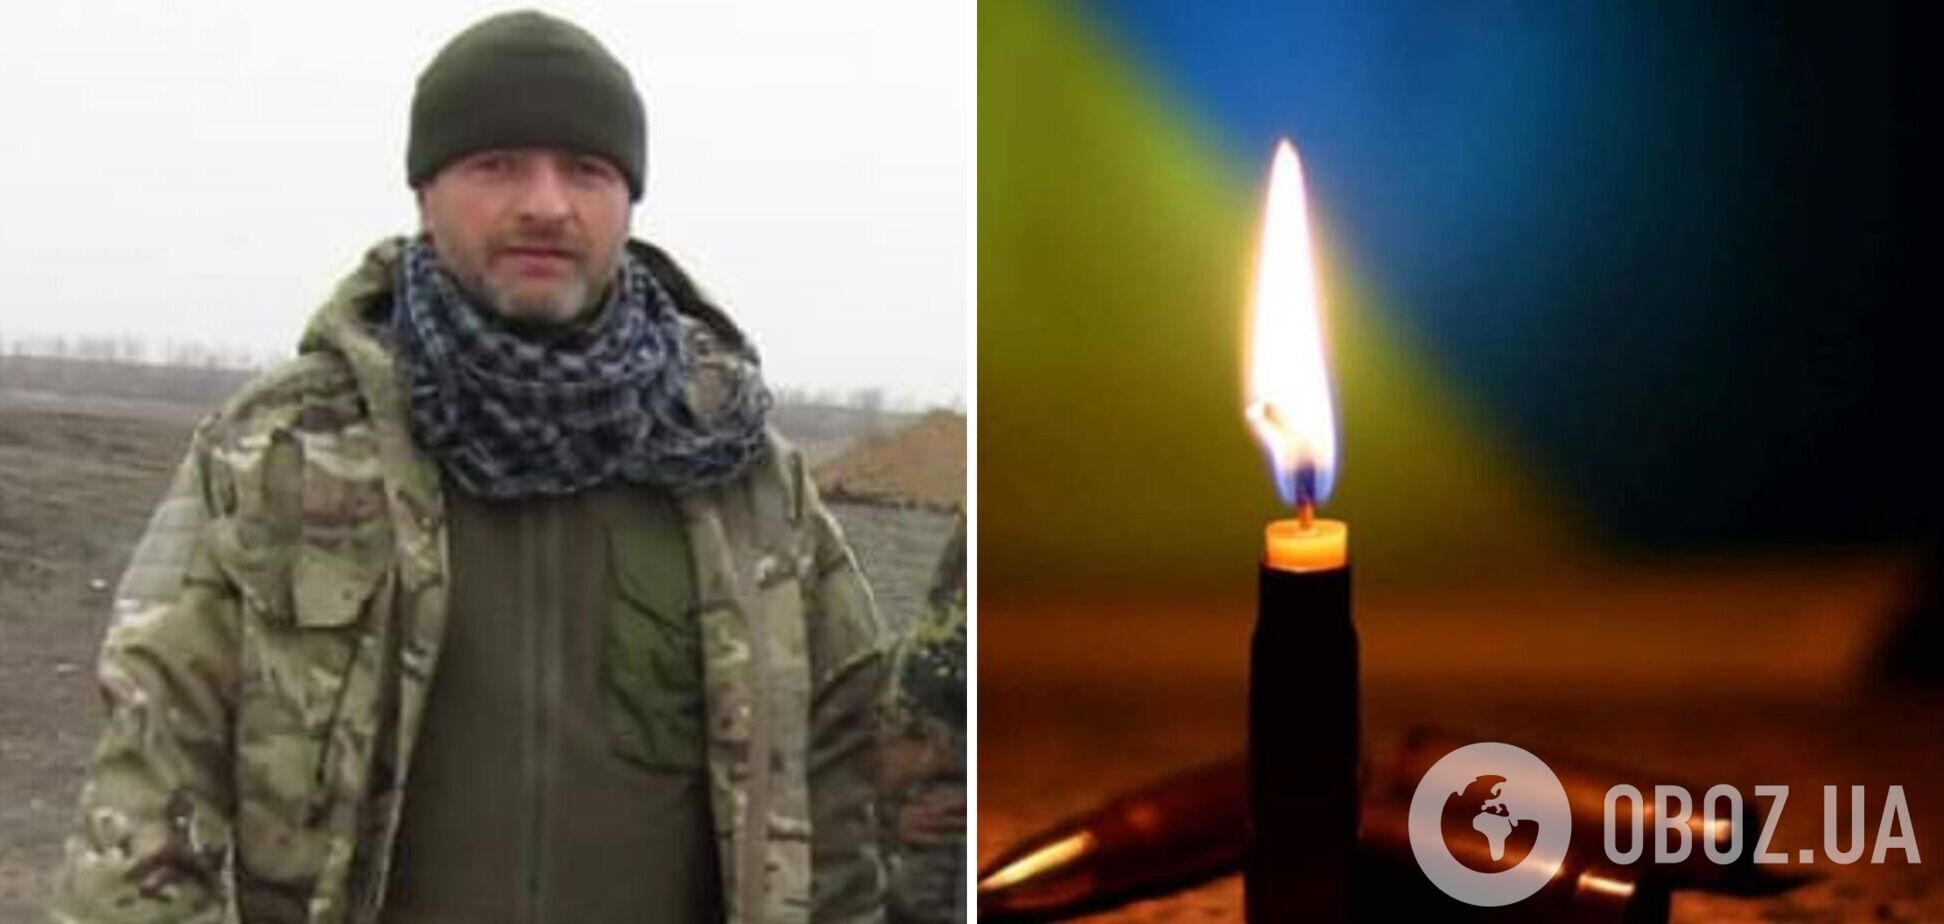 Командир, вызывавший восторг: в боях за Украину отдал жизнь защитник из Тернополя 'Махно'. Фото